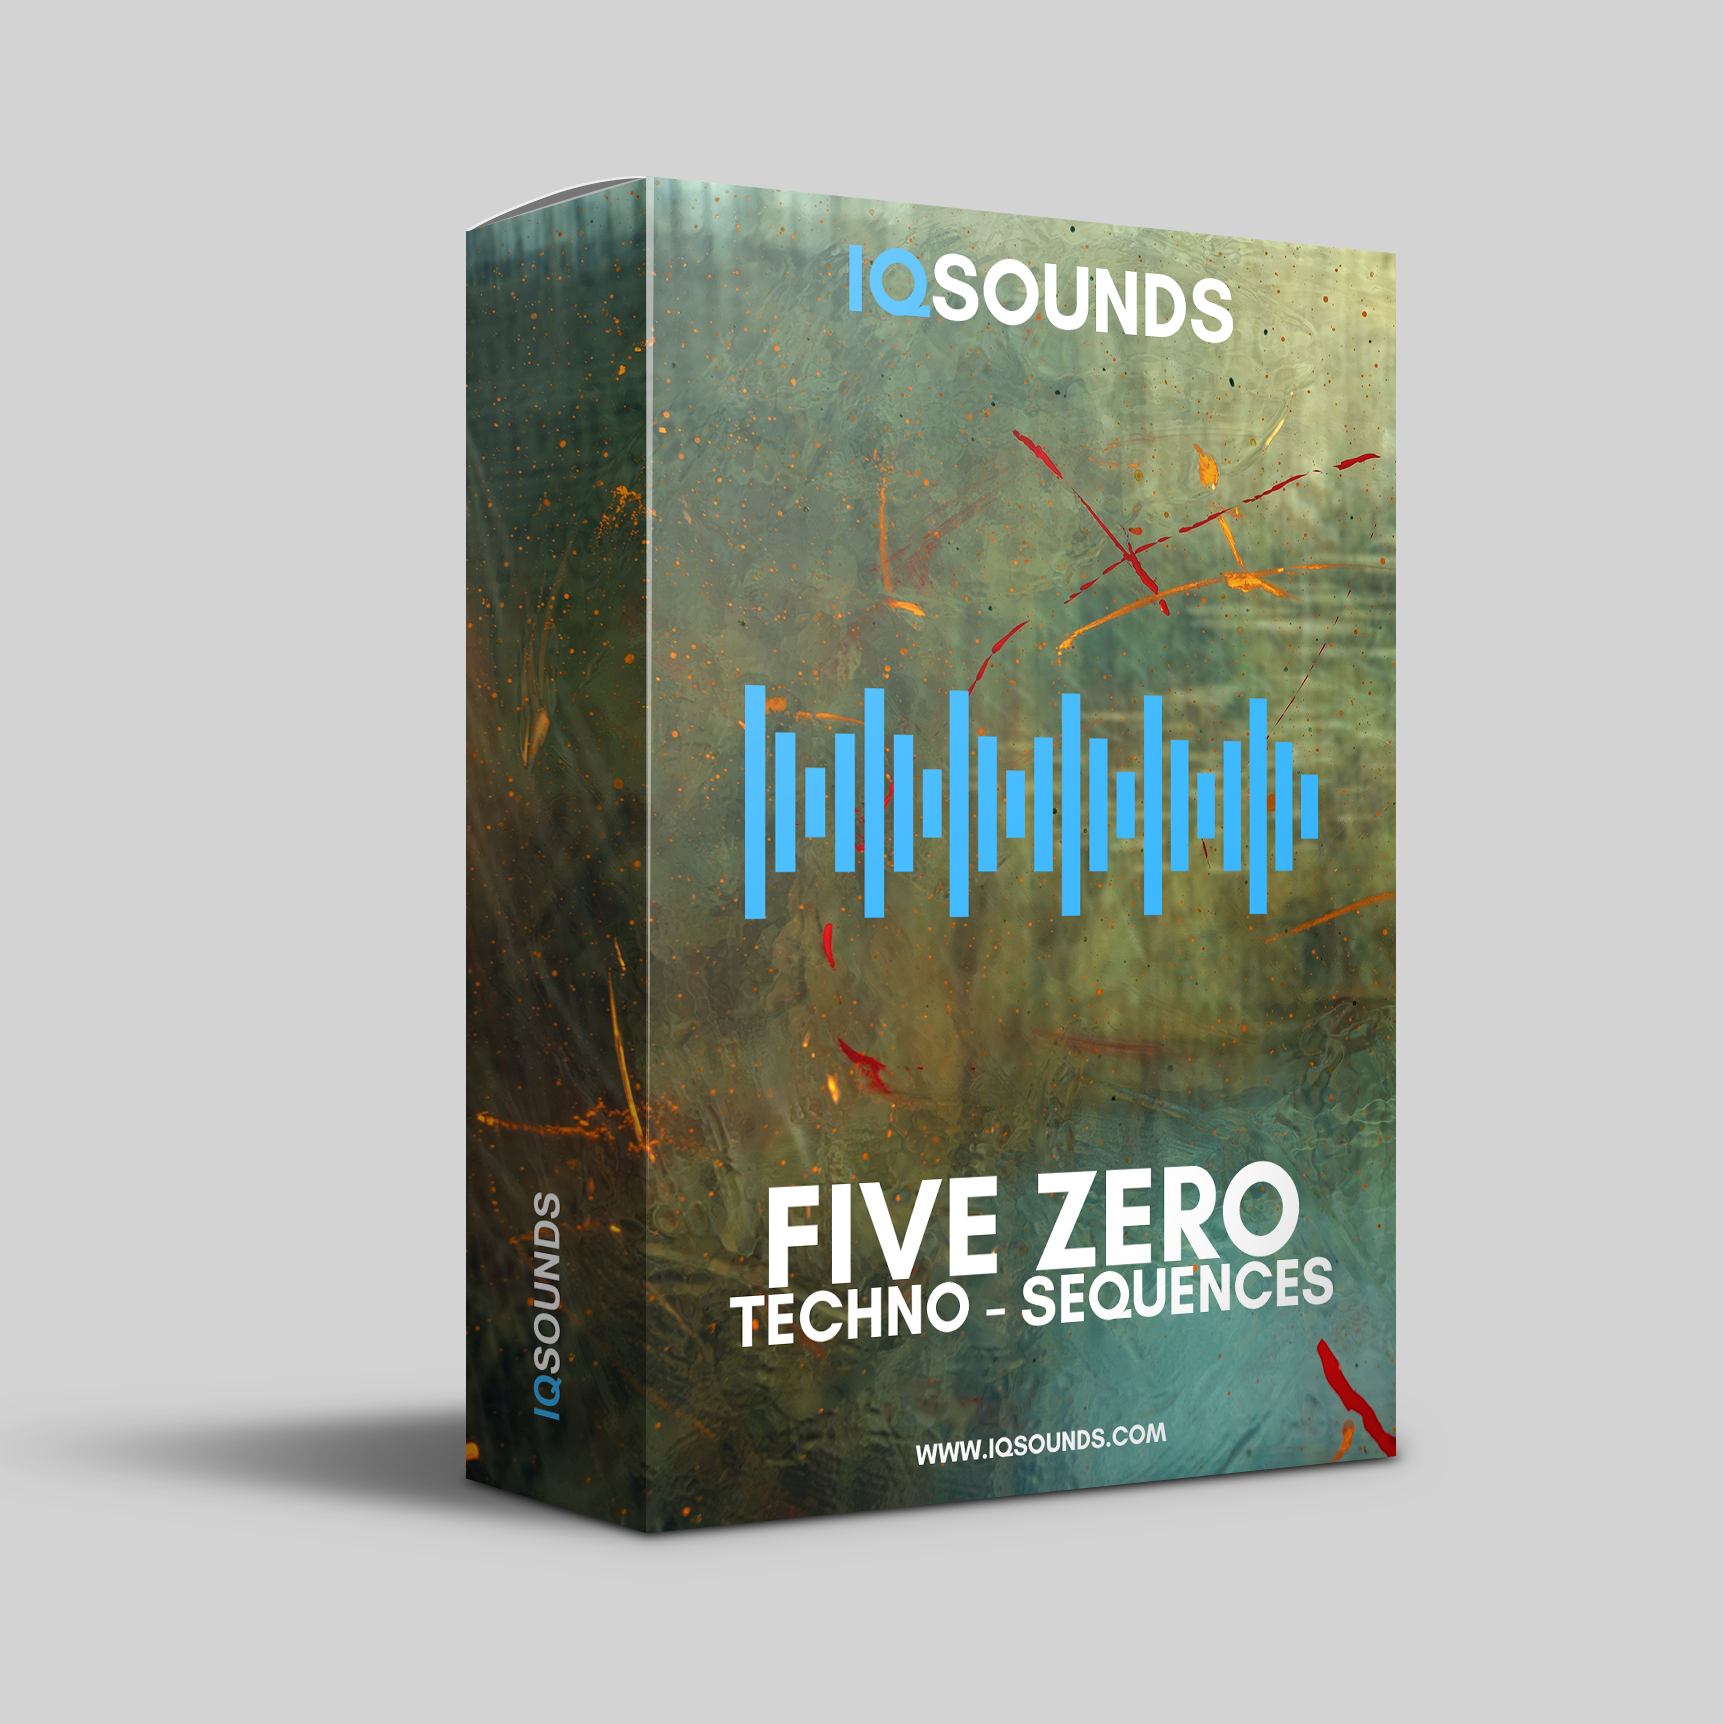 iqsounds, five zero techno, five zero techno sequences, techno sequences, audio sequences, royalty free samples, techno acid